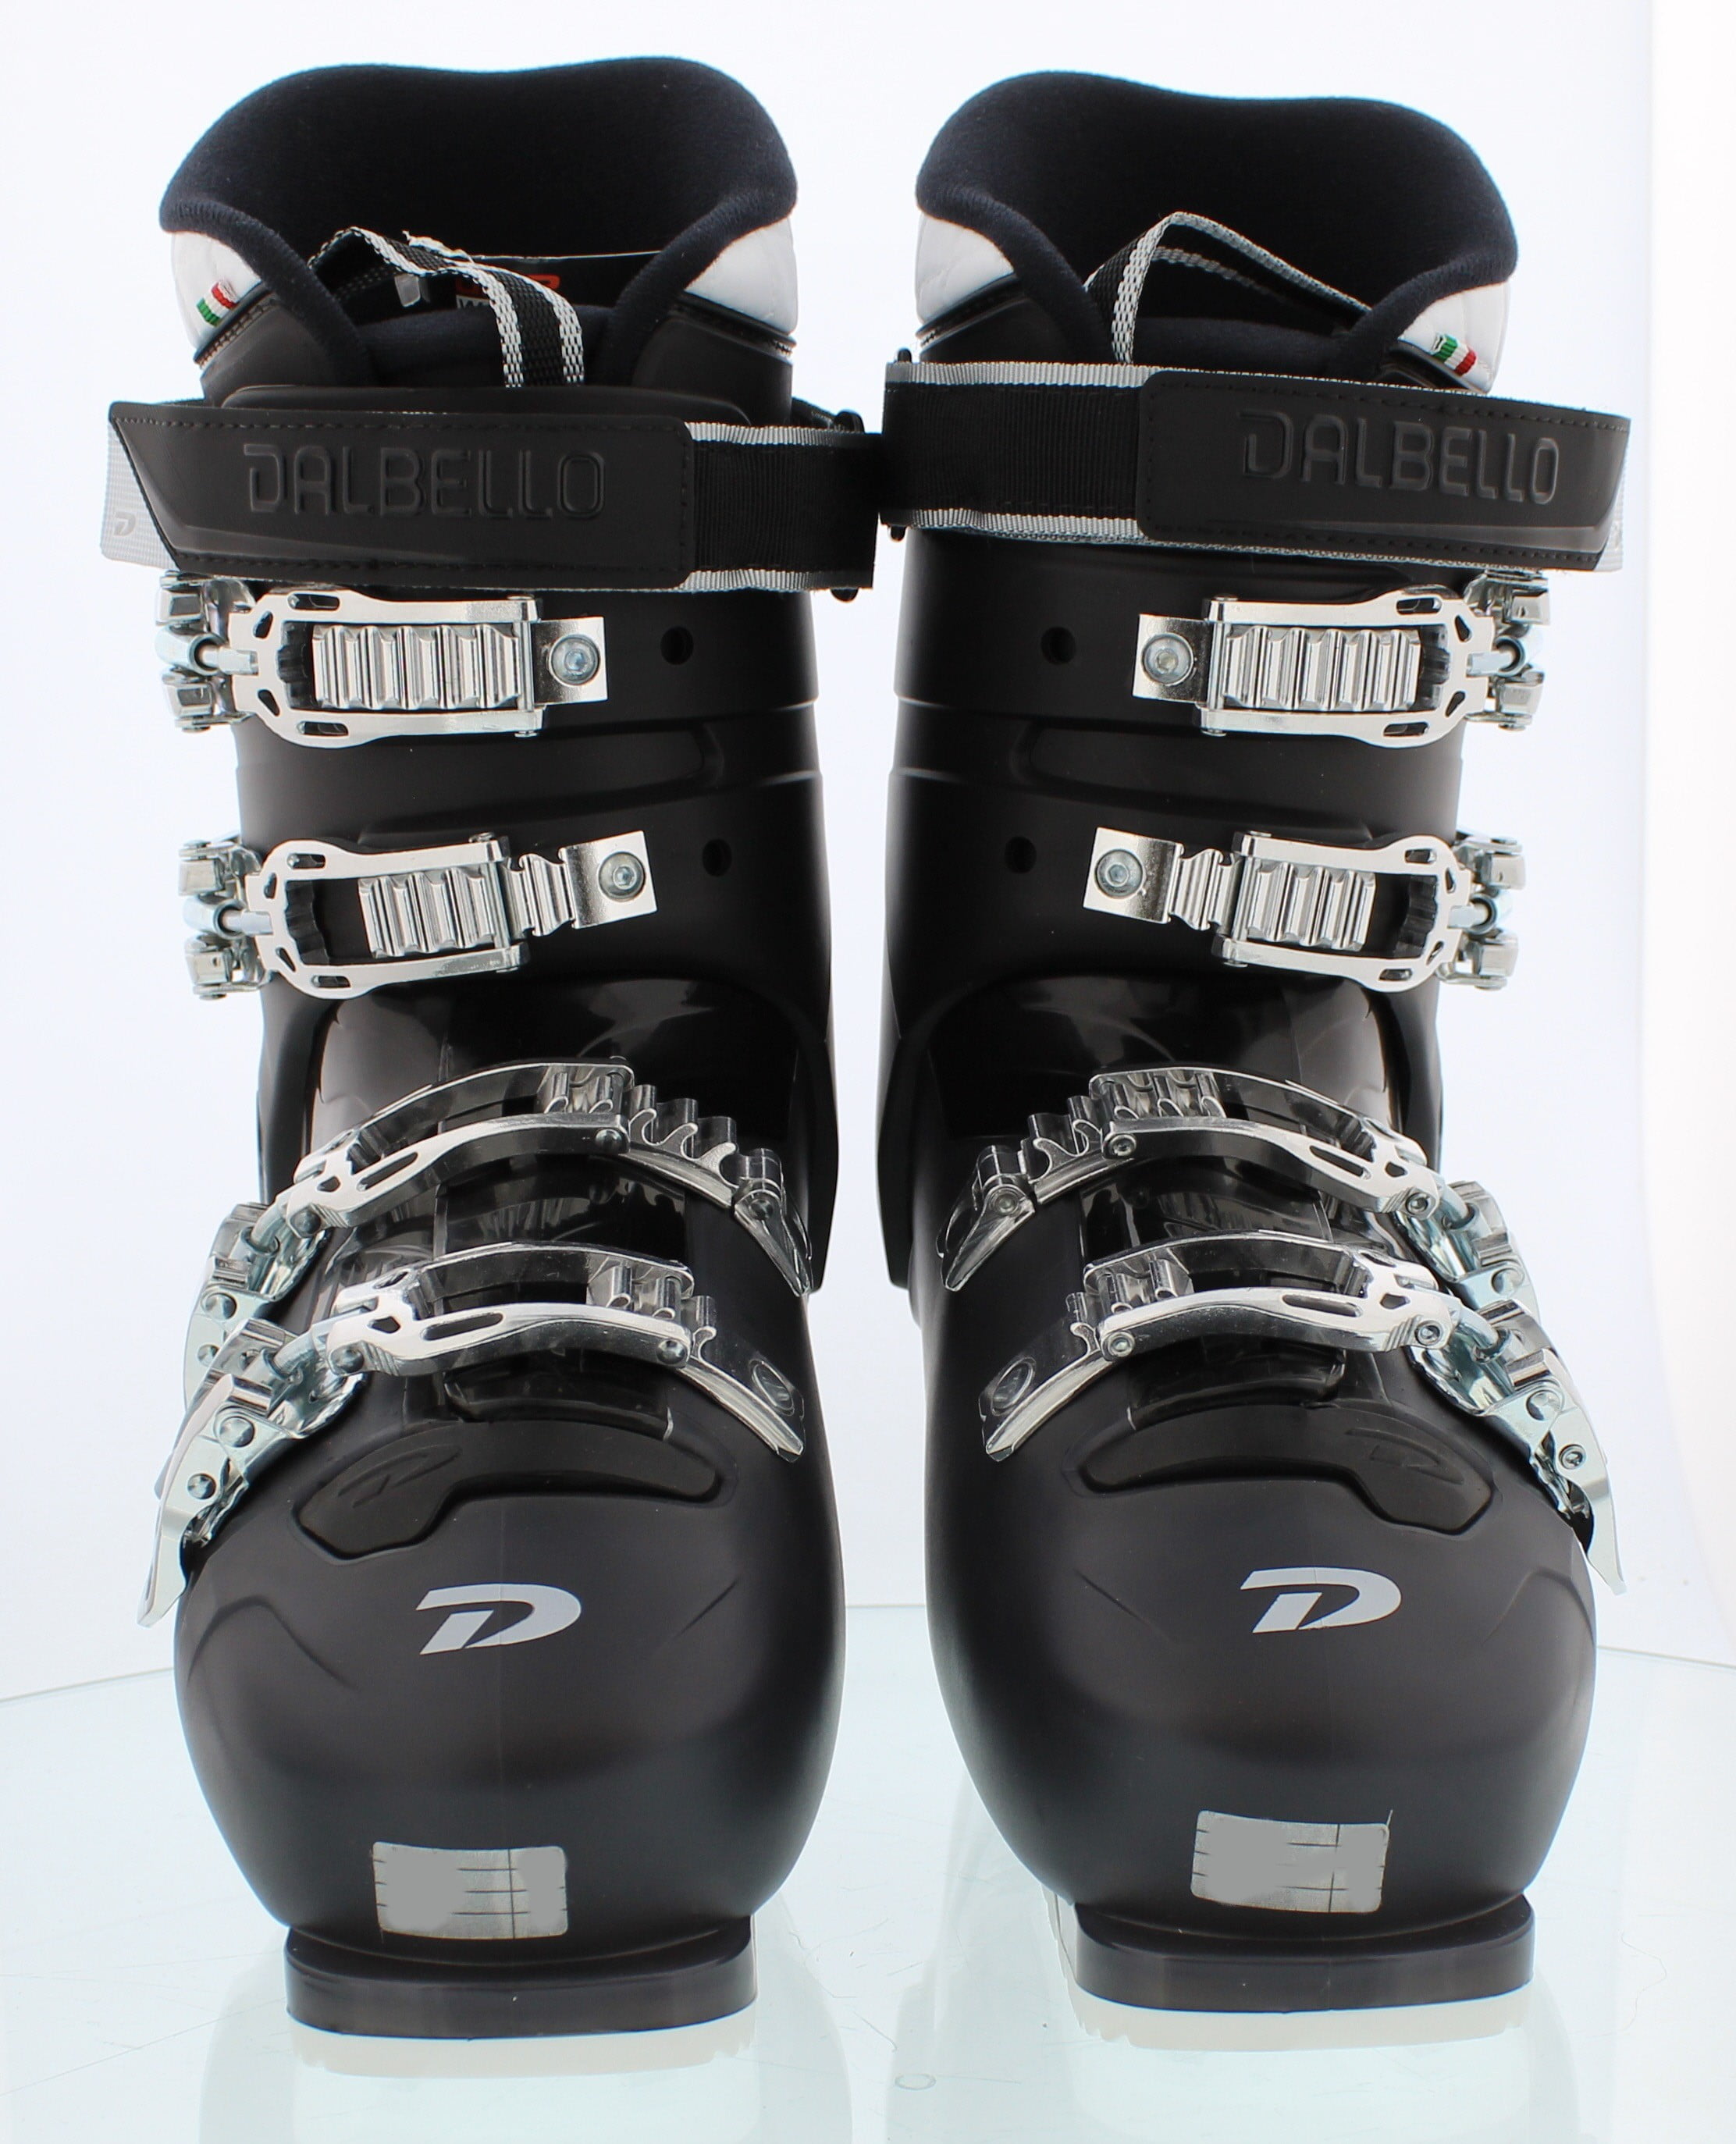 Black Winter Sports Boots Mondo 270 